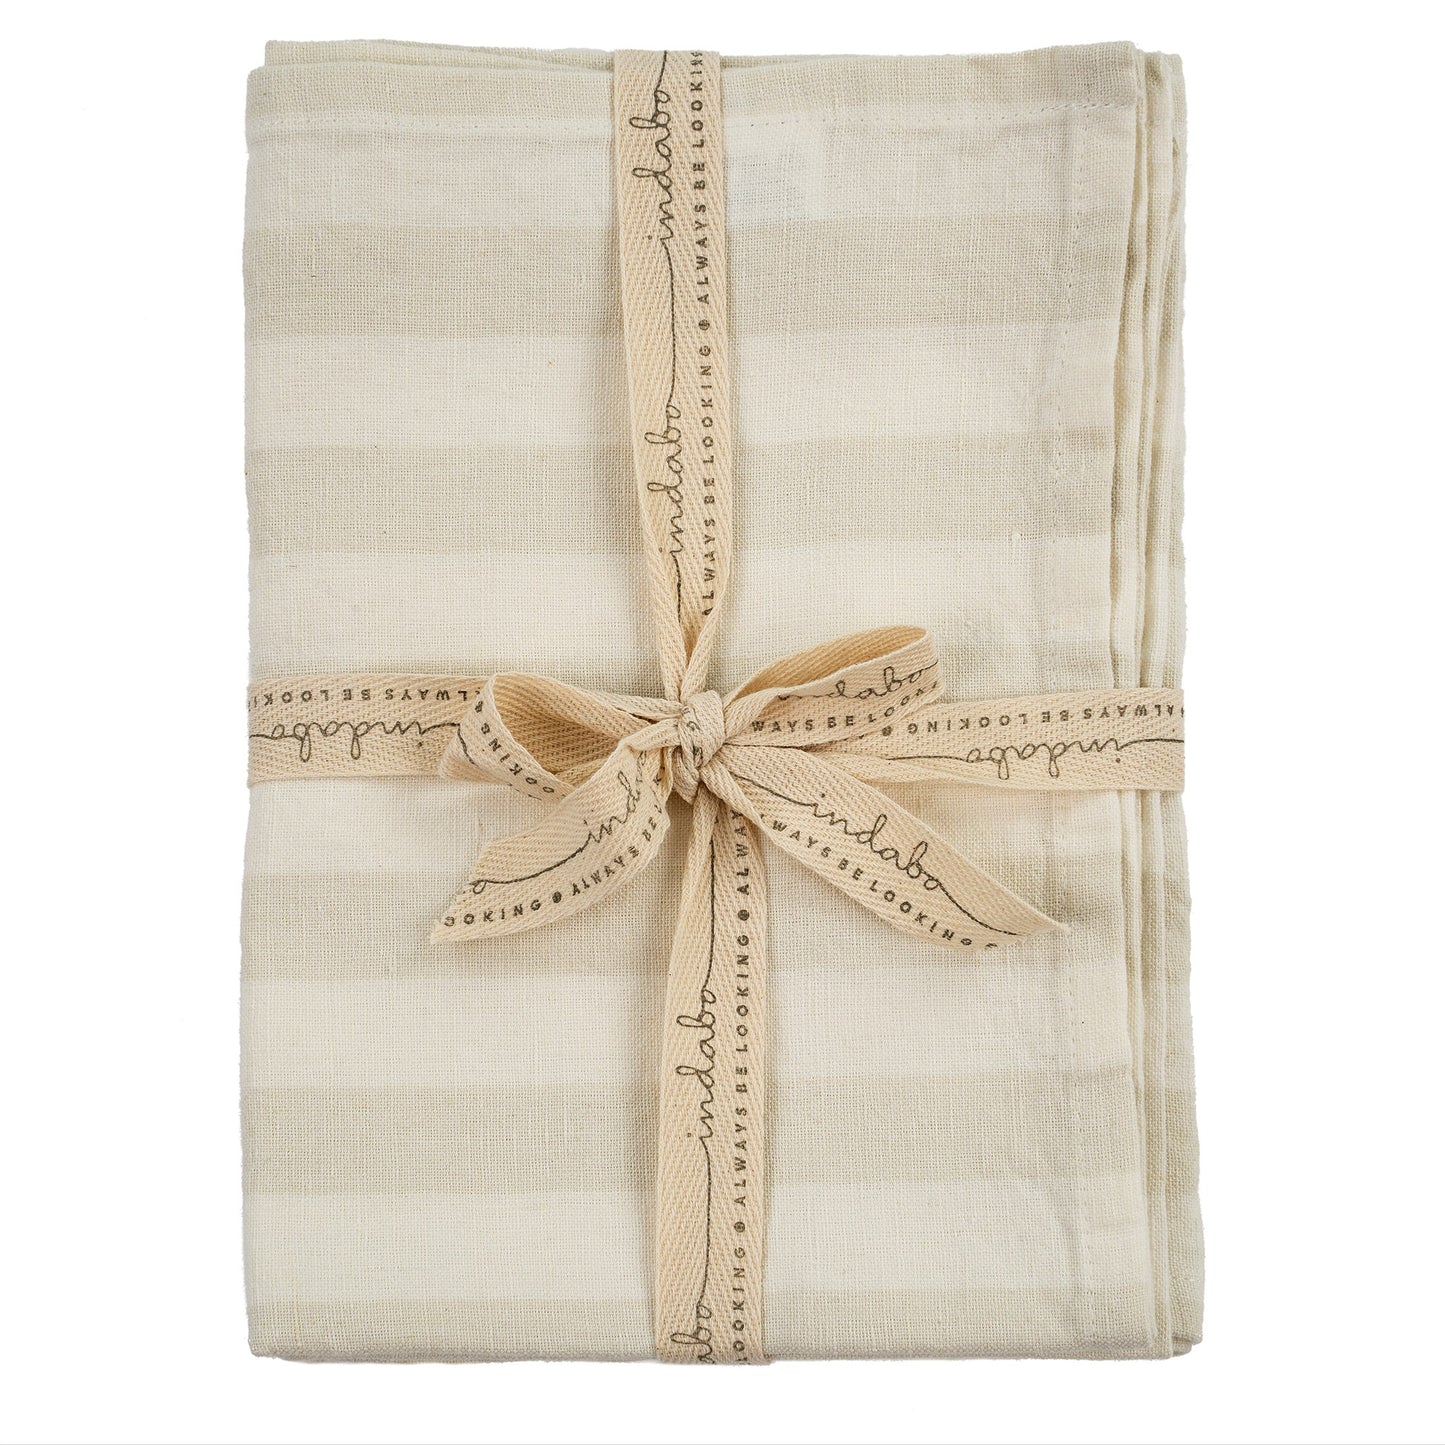 Linen Gingham Tea Towels - Natural